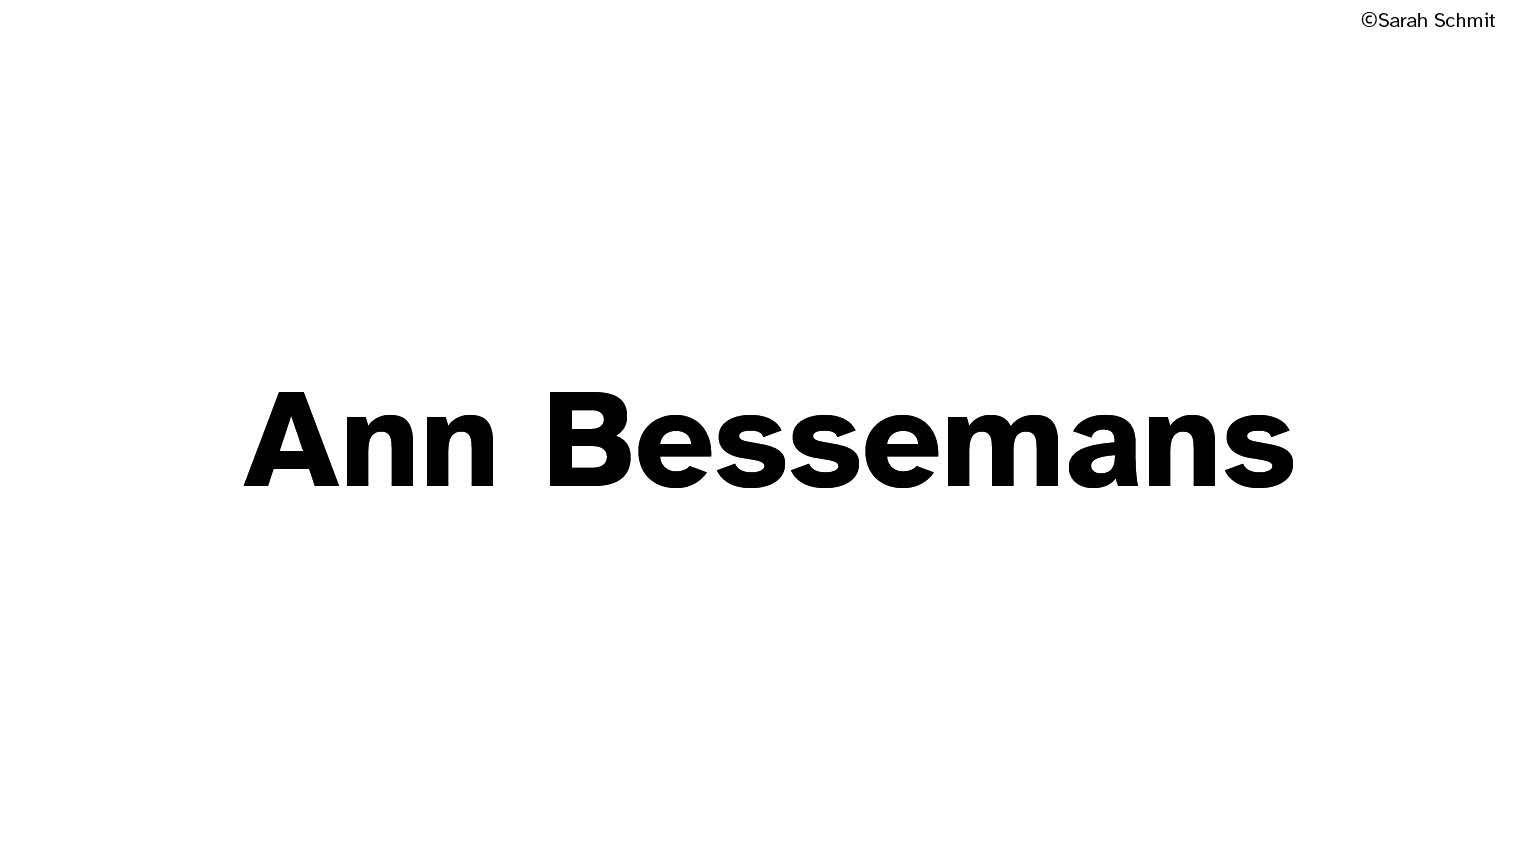 Ann Bessemans